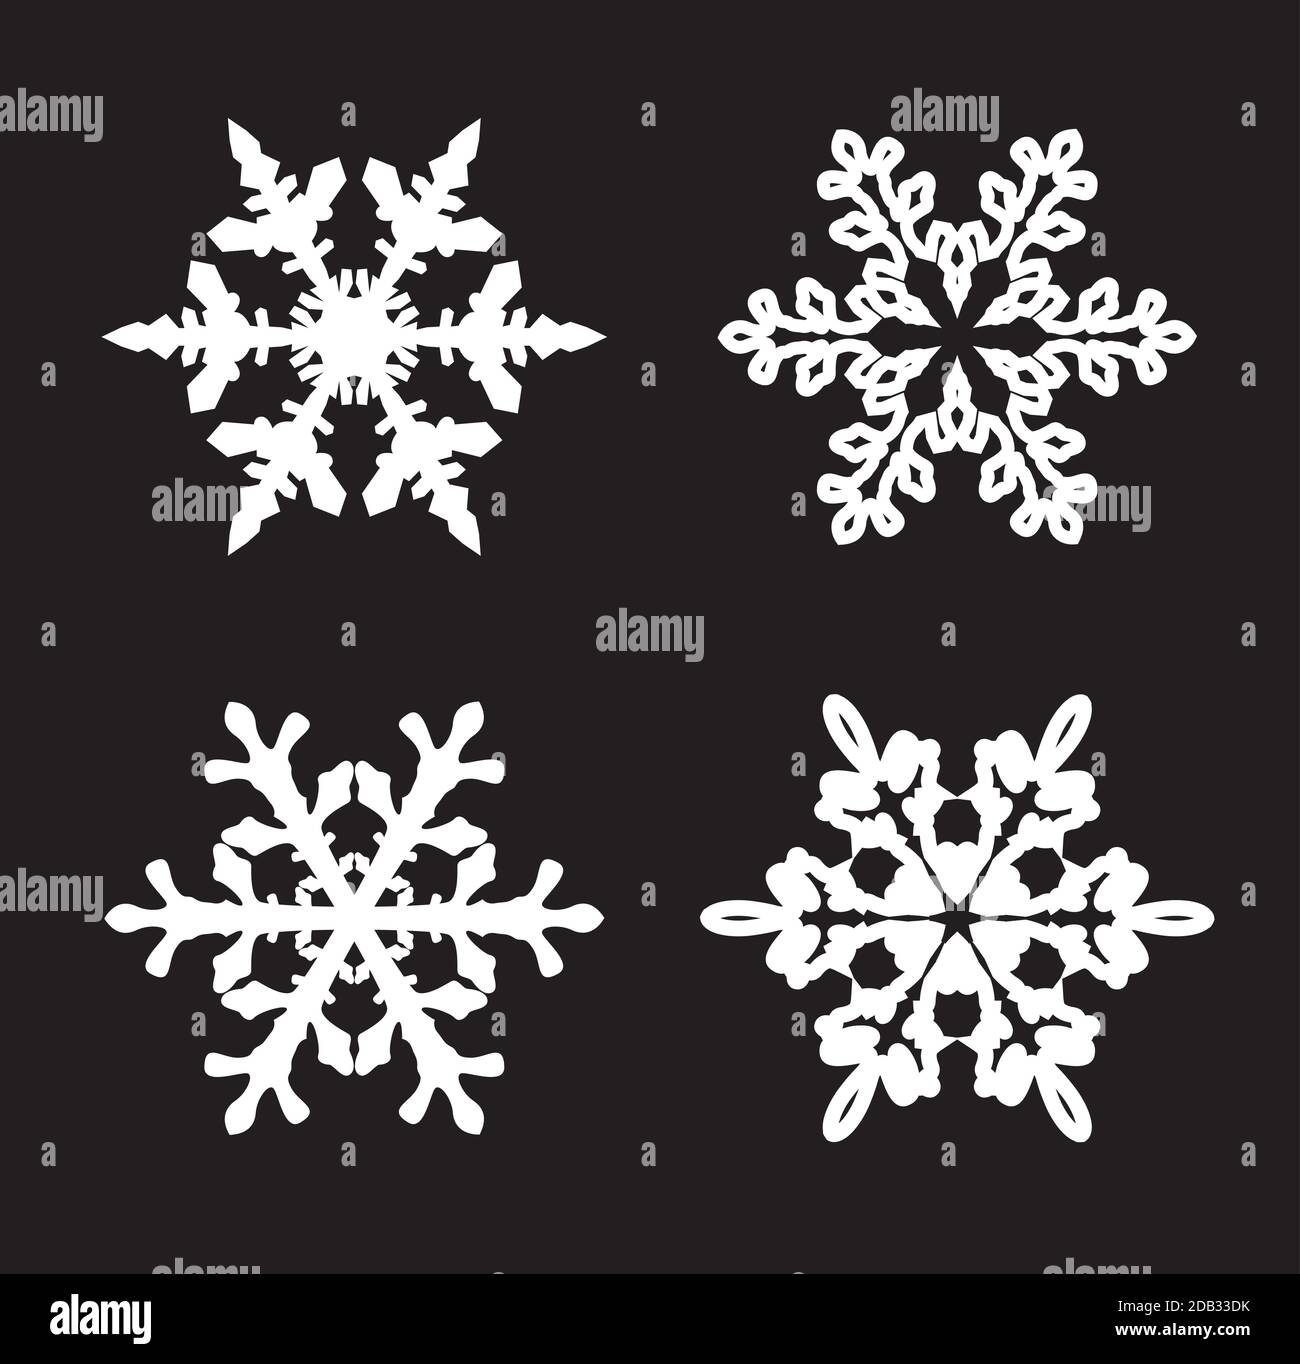 Sammlung von weißen Schneeflocken auf schwarzem Hintergrund. Vektor Illustration und Logo Design. Stock Vektor